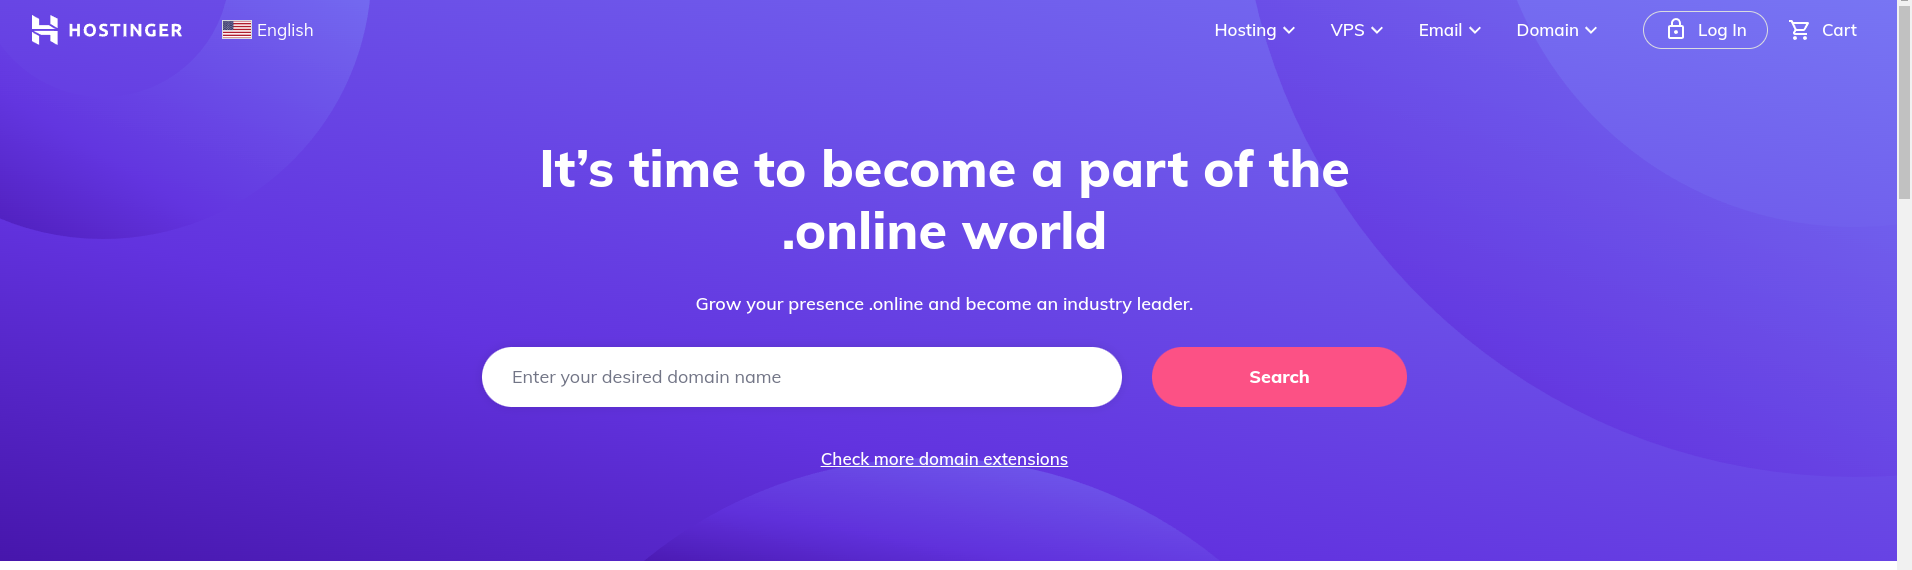 hostinger home page